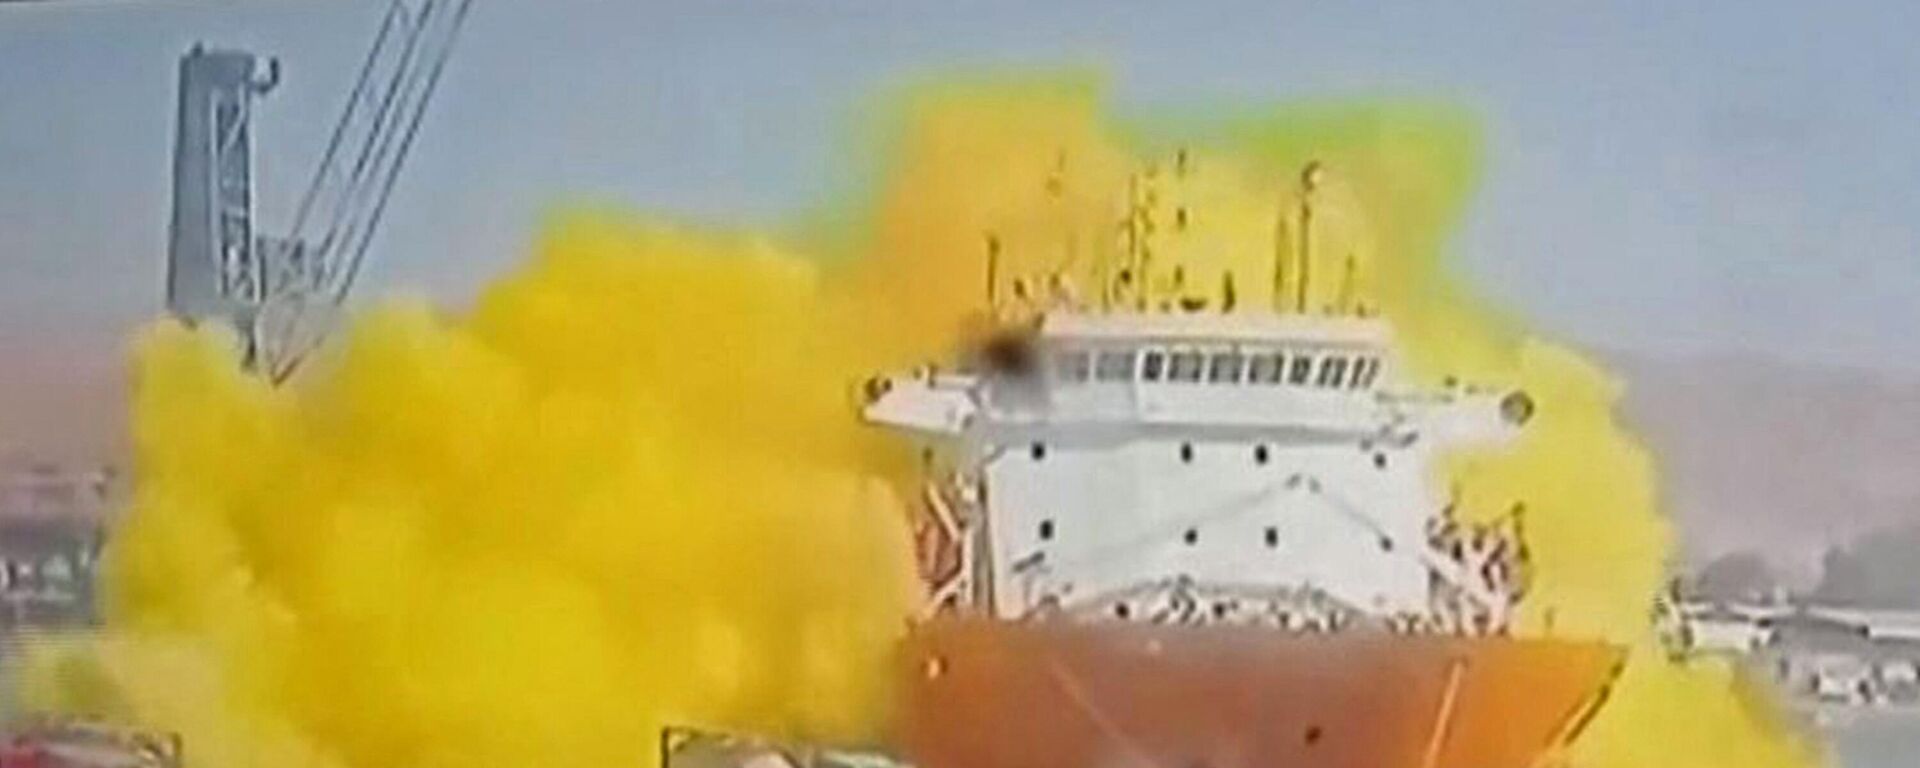 صورة مأخوذة من لقطات كاميرات المراقبة التي بثتها قناة المملكة الأردنية في 27 يونيو 2022 تظهر لحظة انفجار غاز سام في ميناء العقبة الأردني. - سبوتنيك عربي, 1920, 27.06.2022